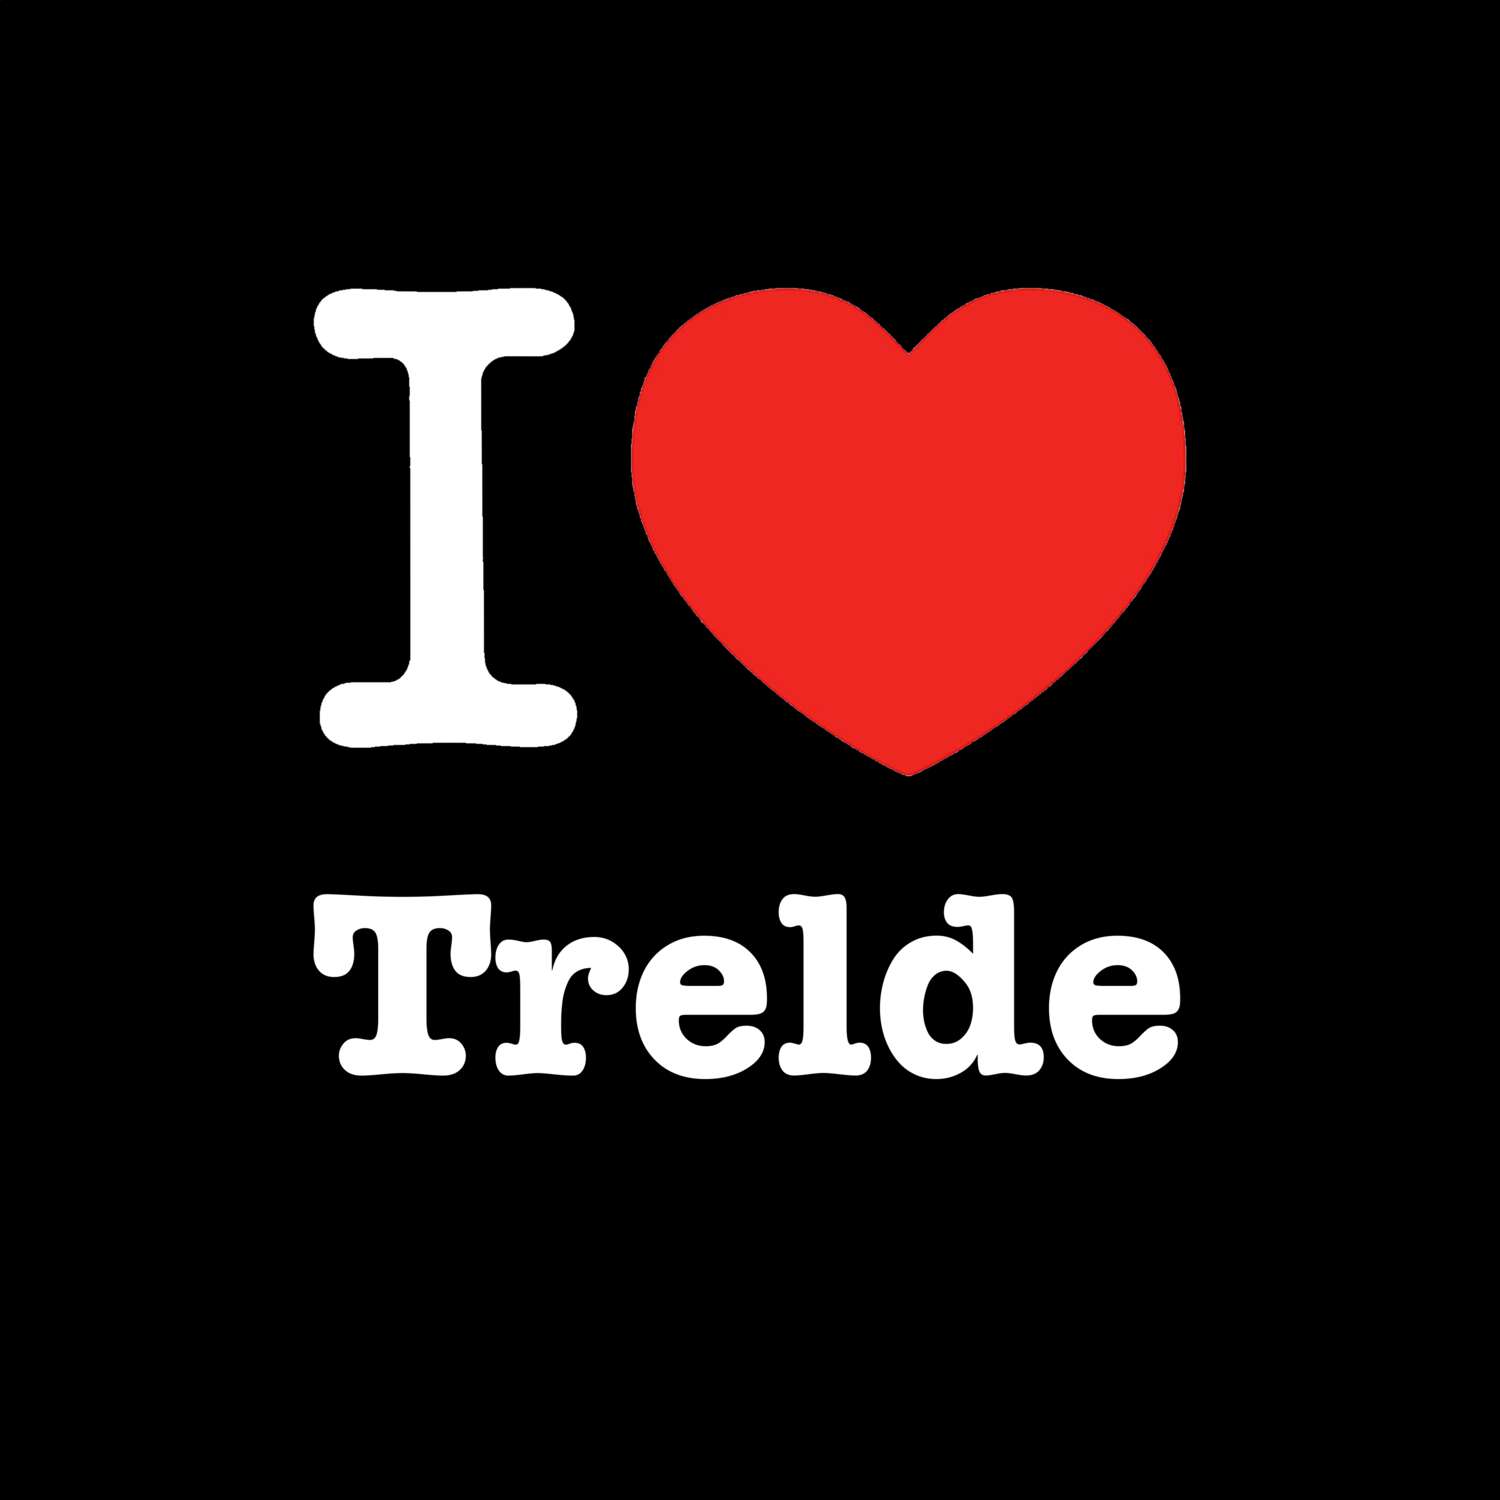 Trelde T-Shirt »I love«